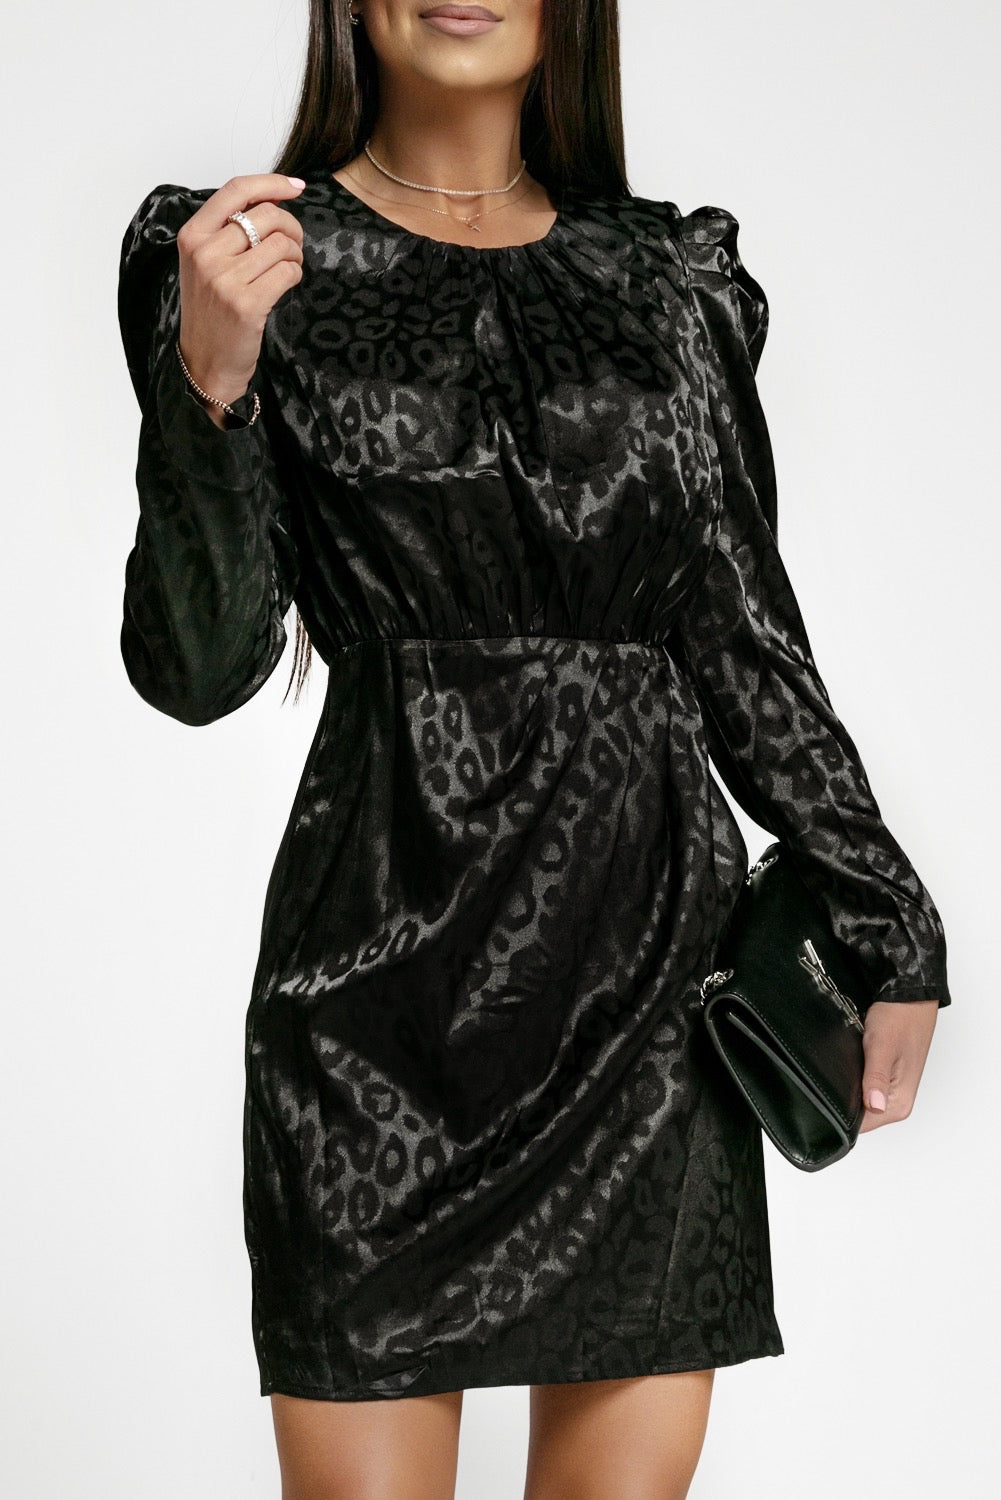 Leopard Print Dress - Black